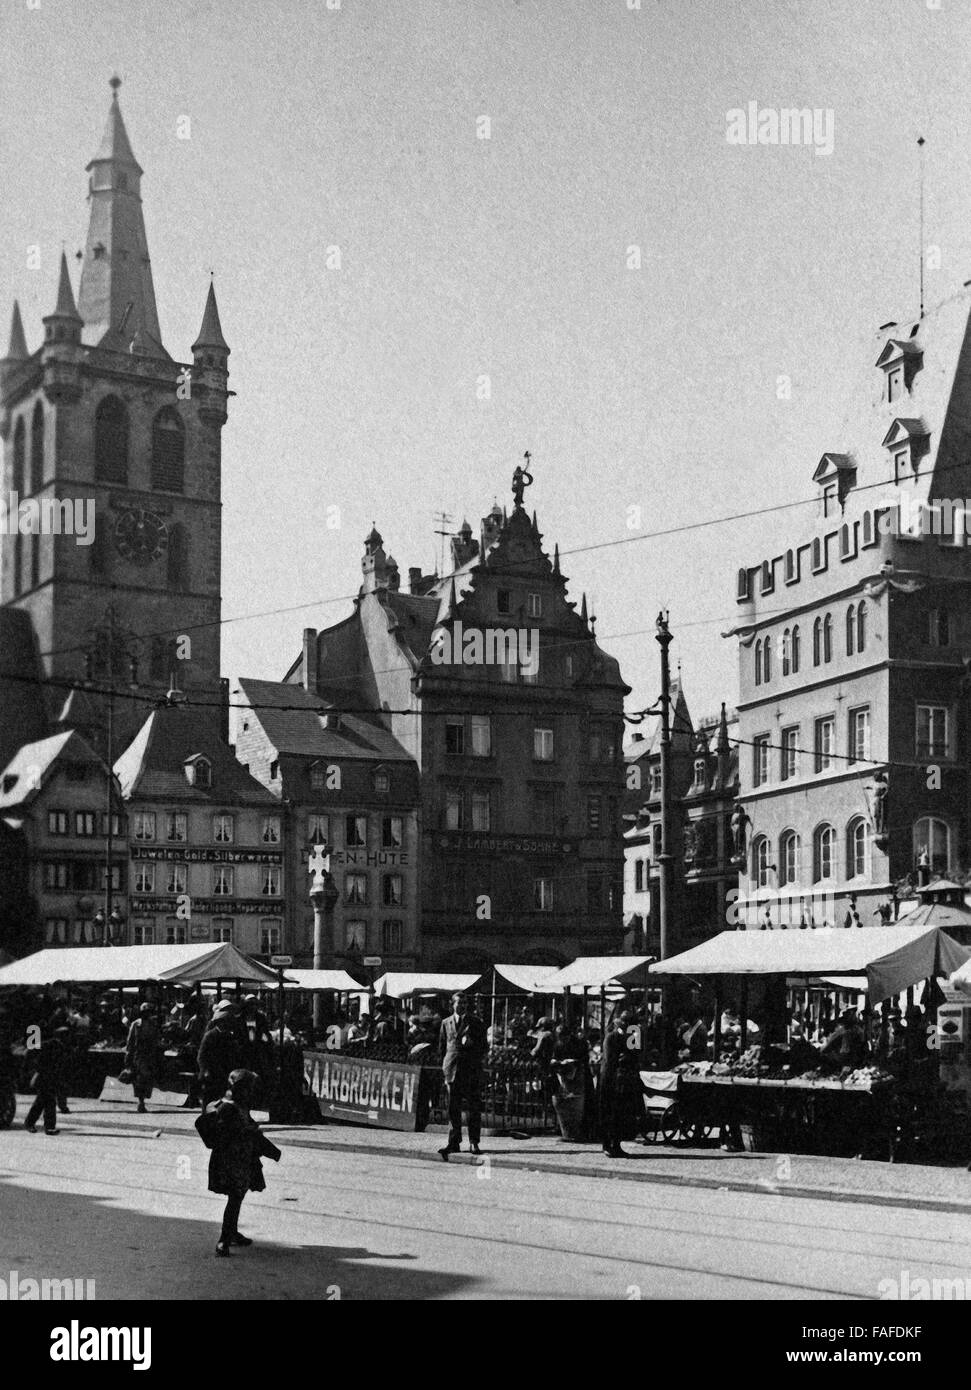 Blick auf die Kirche Saint Gangolf und den Marktplatz in der Innenstadt von Trier, Deutschland 1930 er Jahre. Vue de l'église de Saint Gangolf et principal marché à Trier, Allemagne 1930. Banque D'Images